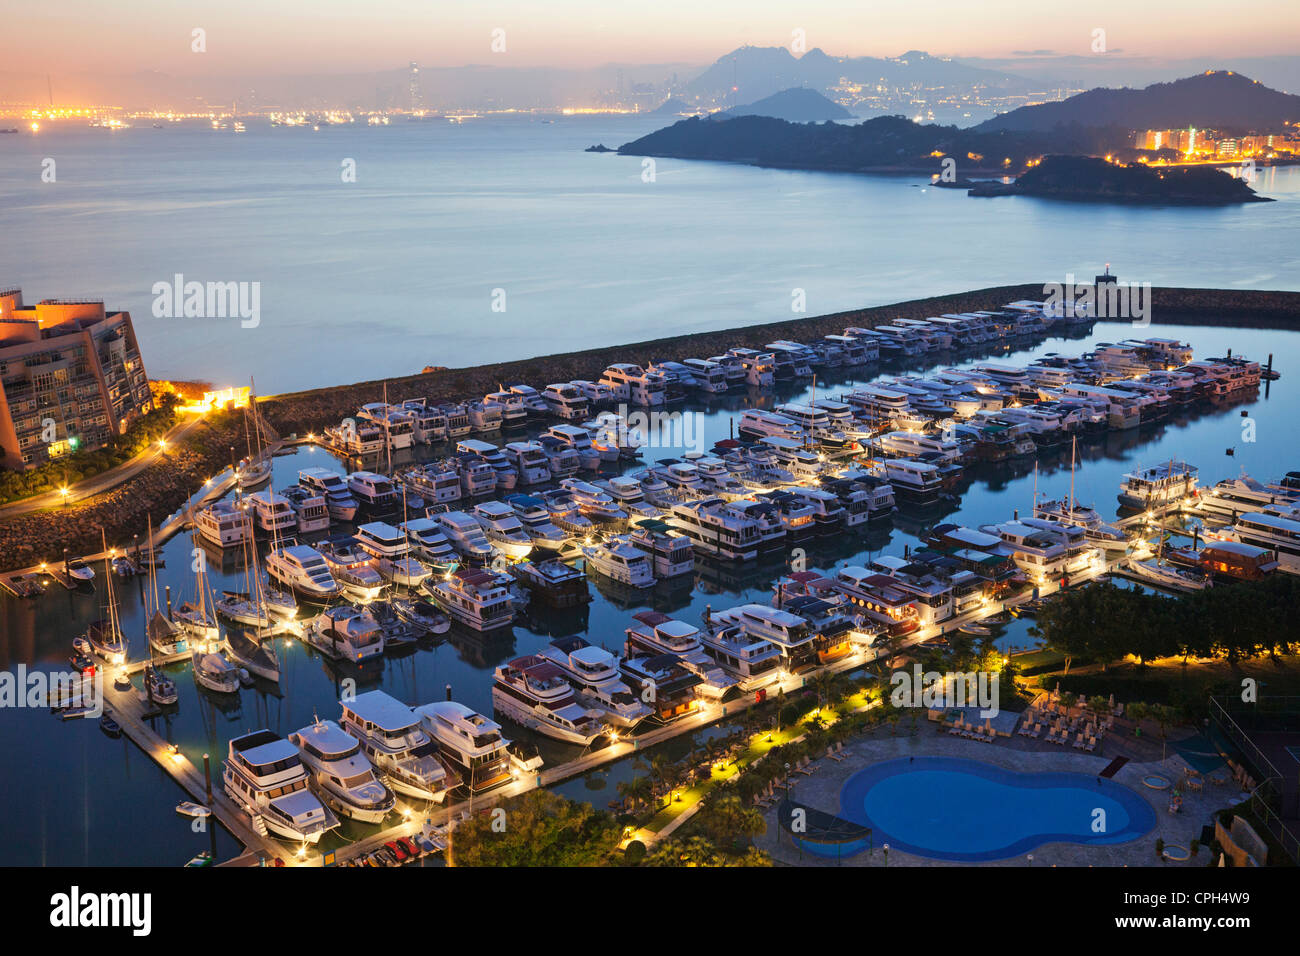 Asia, China, Hong Kong, Lantau, Discovery Bay, Waterfront, Marina ...